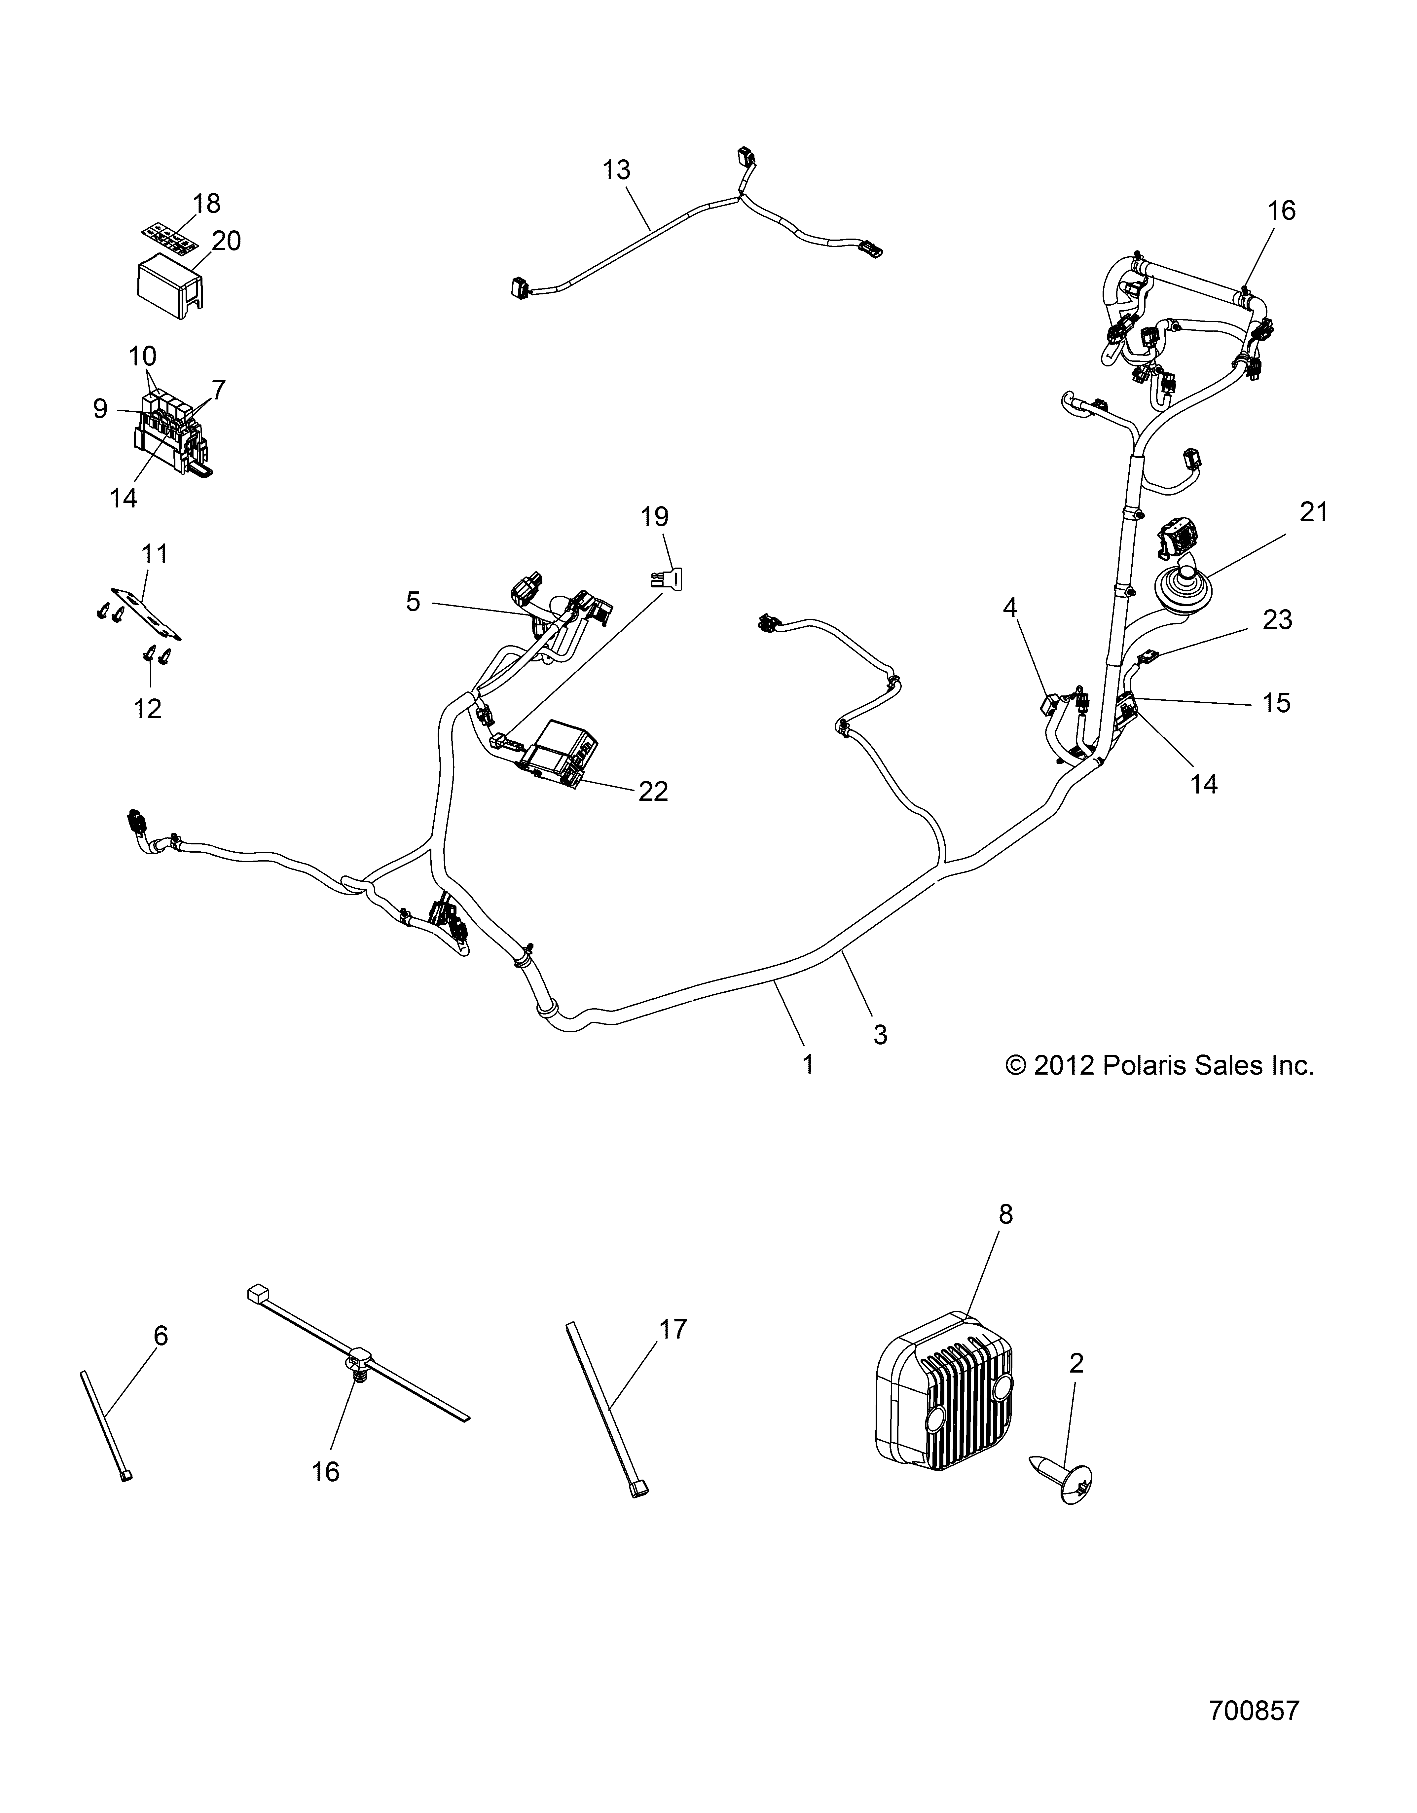 Foto diagrama Polaris que contem a peça 2878508